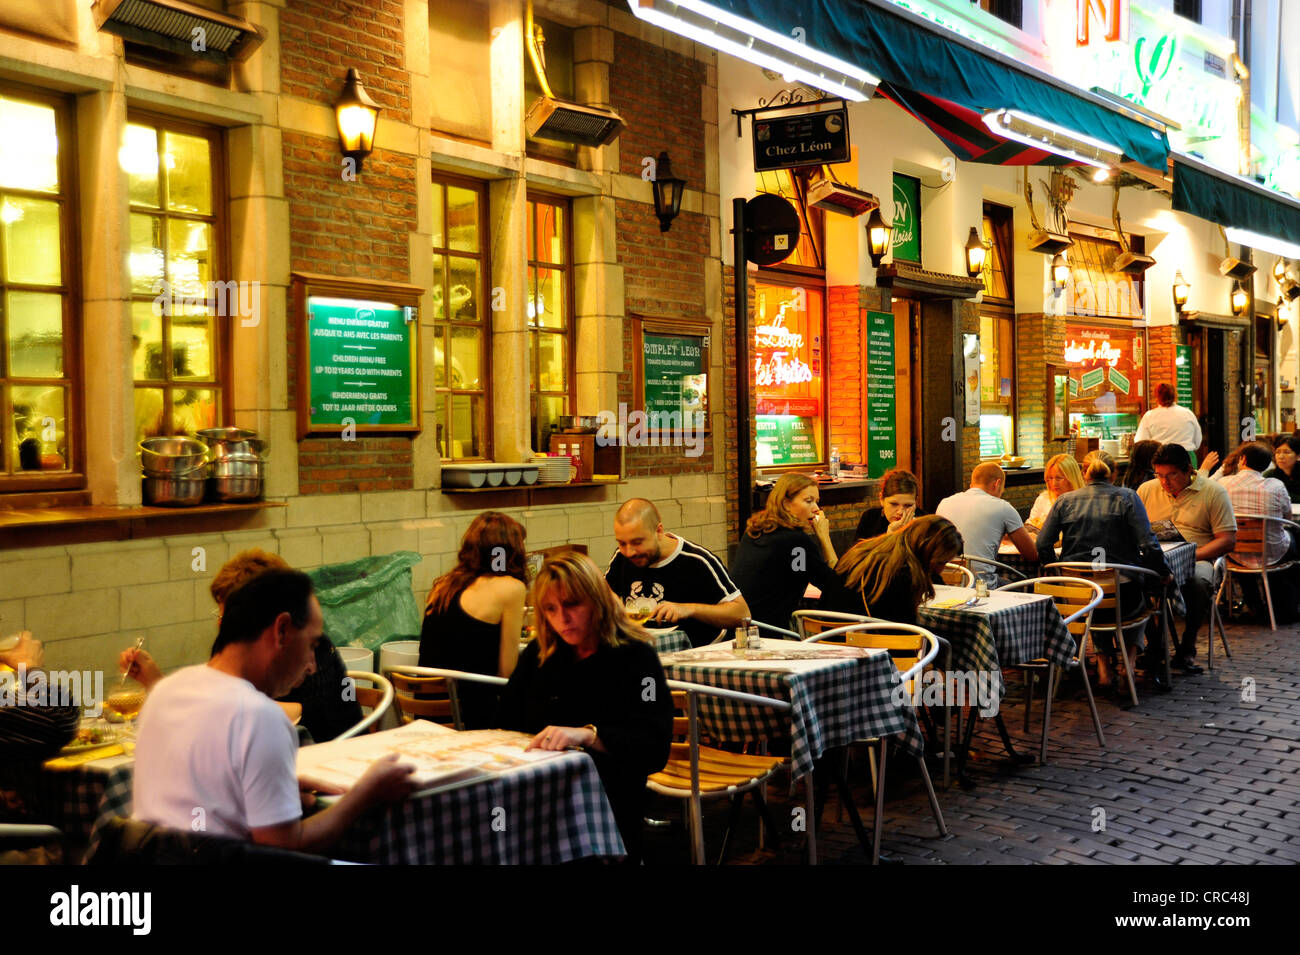 Restaurant Chez Leon in the evening, Rue des Bouchers, Beenhouwersstraat, city centre, Brussels, Belgium, Benelux Stock Photo